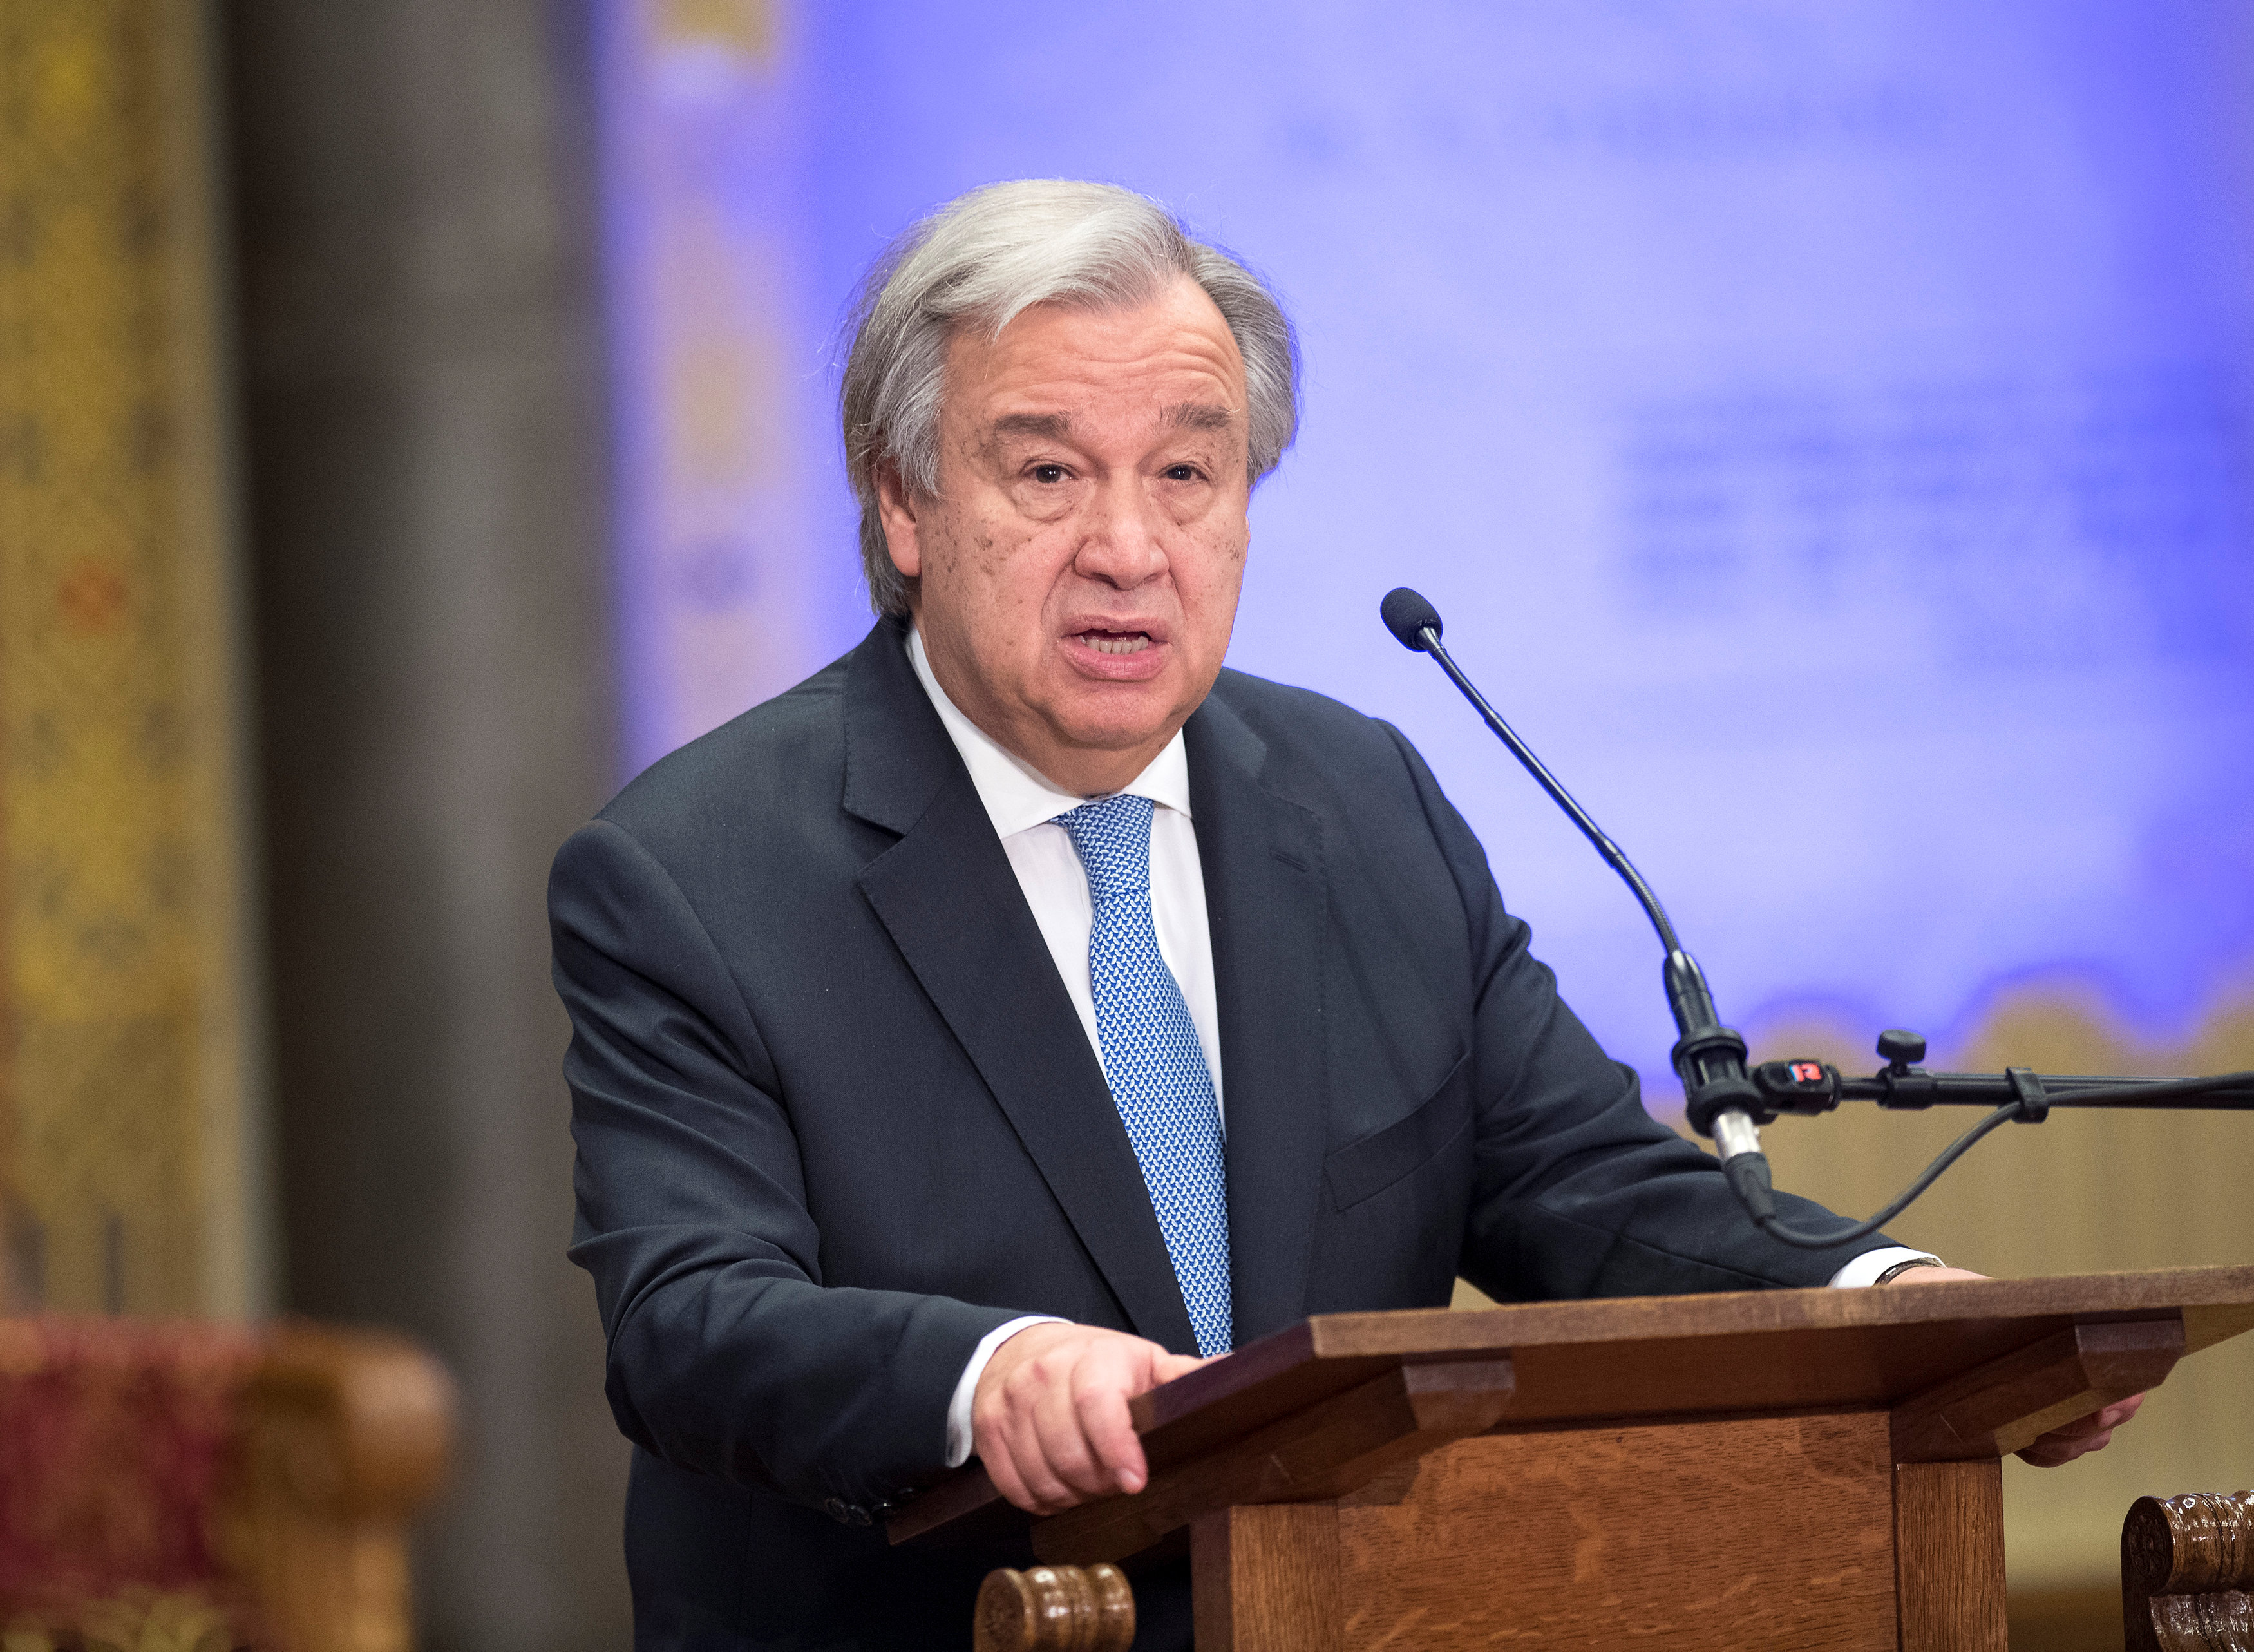 “En este comienzo del año 2018, quisiera apelar a la unidad de la comunidad internacional. Nuestro futuro depende de ello”, dijo Guterres.